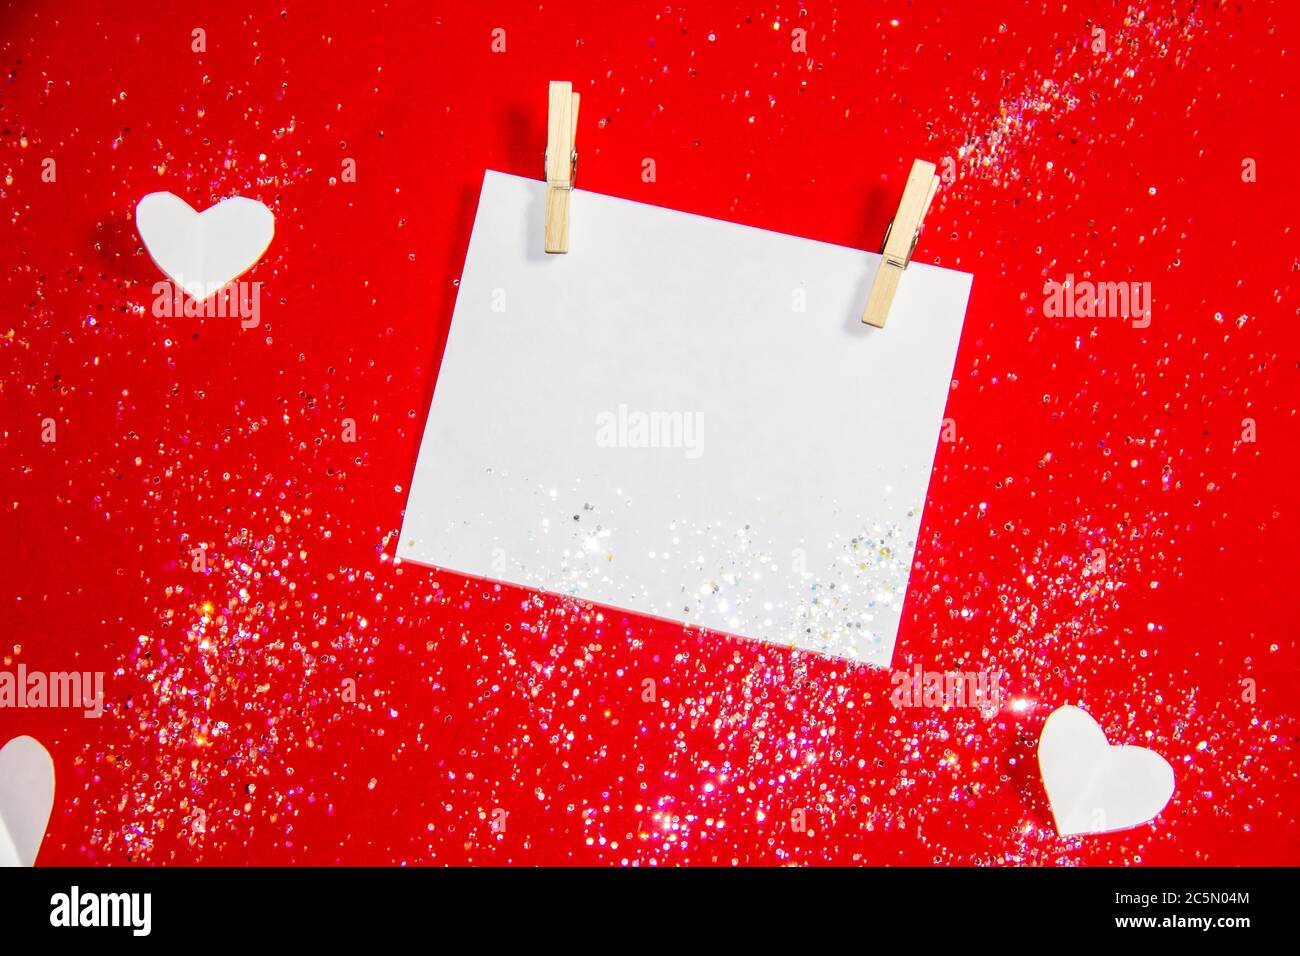 Komposition für Valentinstag. Wäscheklammern, Herzen und Papier für die Note vor einem roten Hintergrund. Elemente für Design oder Karte. Schöner roter Hintergrund Stockfoto